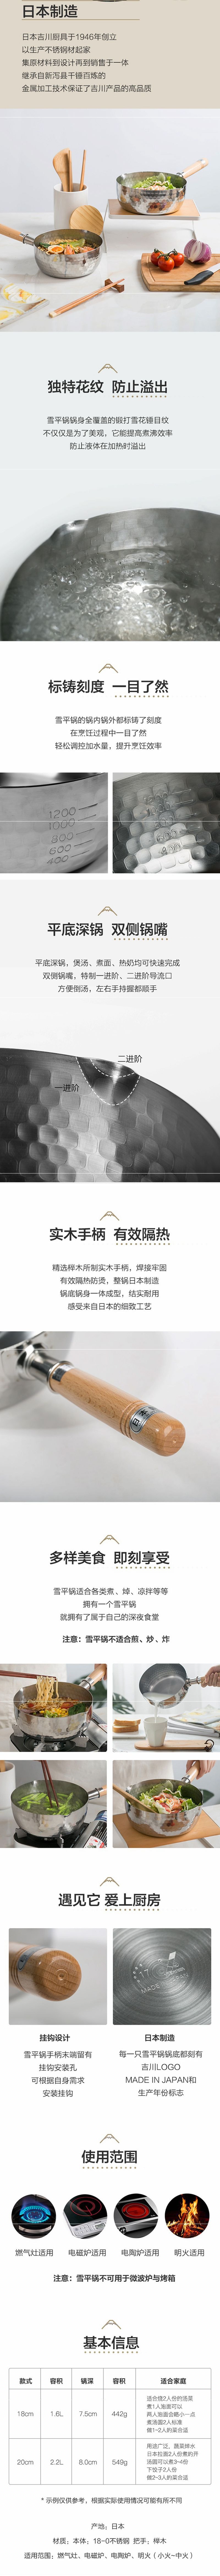 【美国发货 5-7日达】网易严选 预售 日本制造 雪平锅 20cm(无锅盖)  